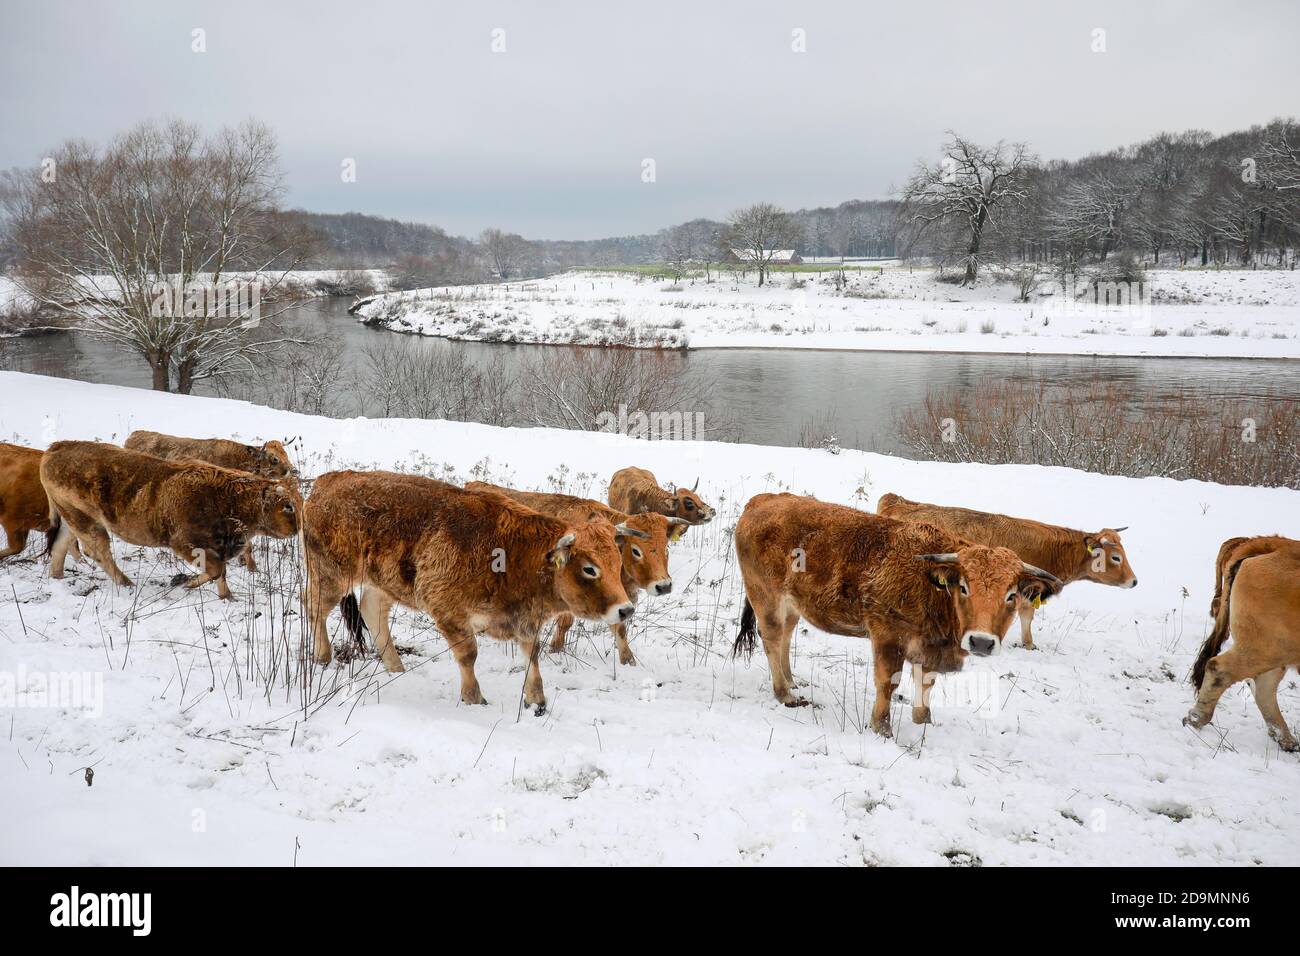 Datteln, Ruhrgebiet, Nordrhein-Westfalen, Deutschland, die Lippe im Winter mit Eis und Schnee leben die ursprünglichen Rinder, hier Aubracs, das ganze Jahr über in fast wilden Bedingungen in den renaturierten Lippeauen, die Aubracs sind die Naturlandschaftspflege. Stockfoto